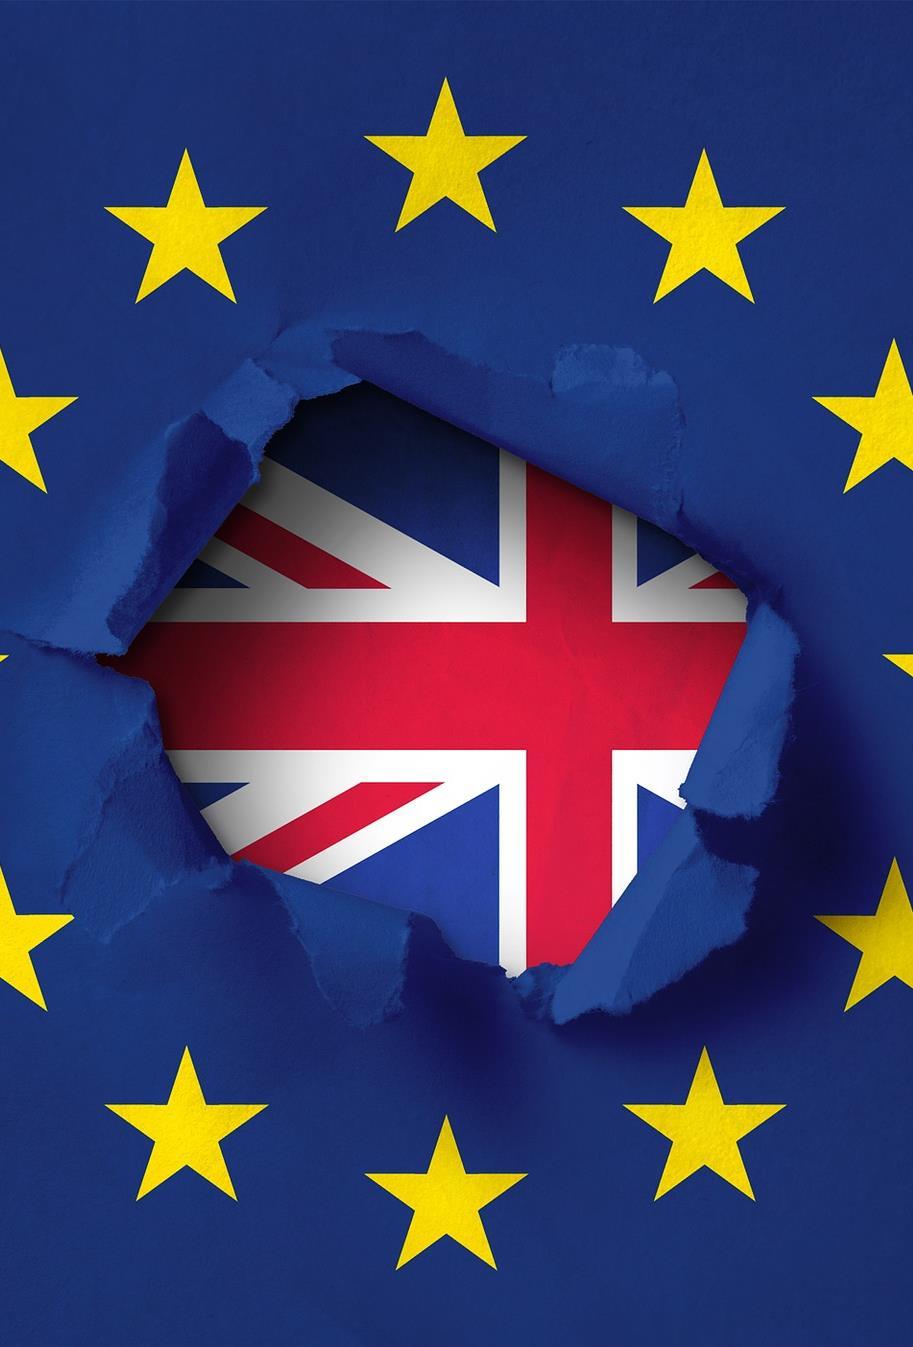 O ESTATUTO DOS CIDADÃOS DA UNIÃO EUROPEIA NO REINO UNIDO Até 29 de Março de 2019, os cidadãos da União Europeia e os cidadãos do Reino Unido mantêm direitos